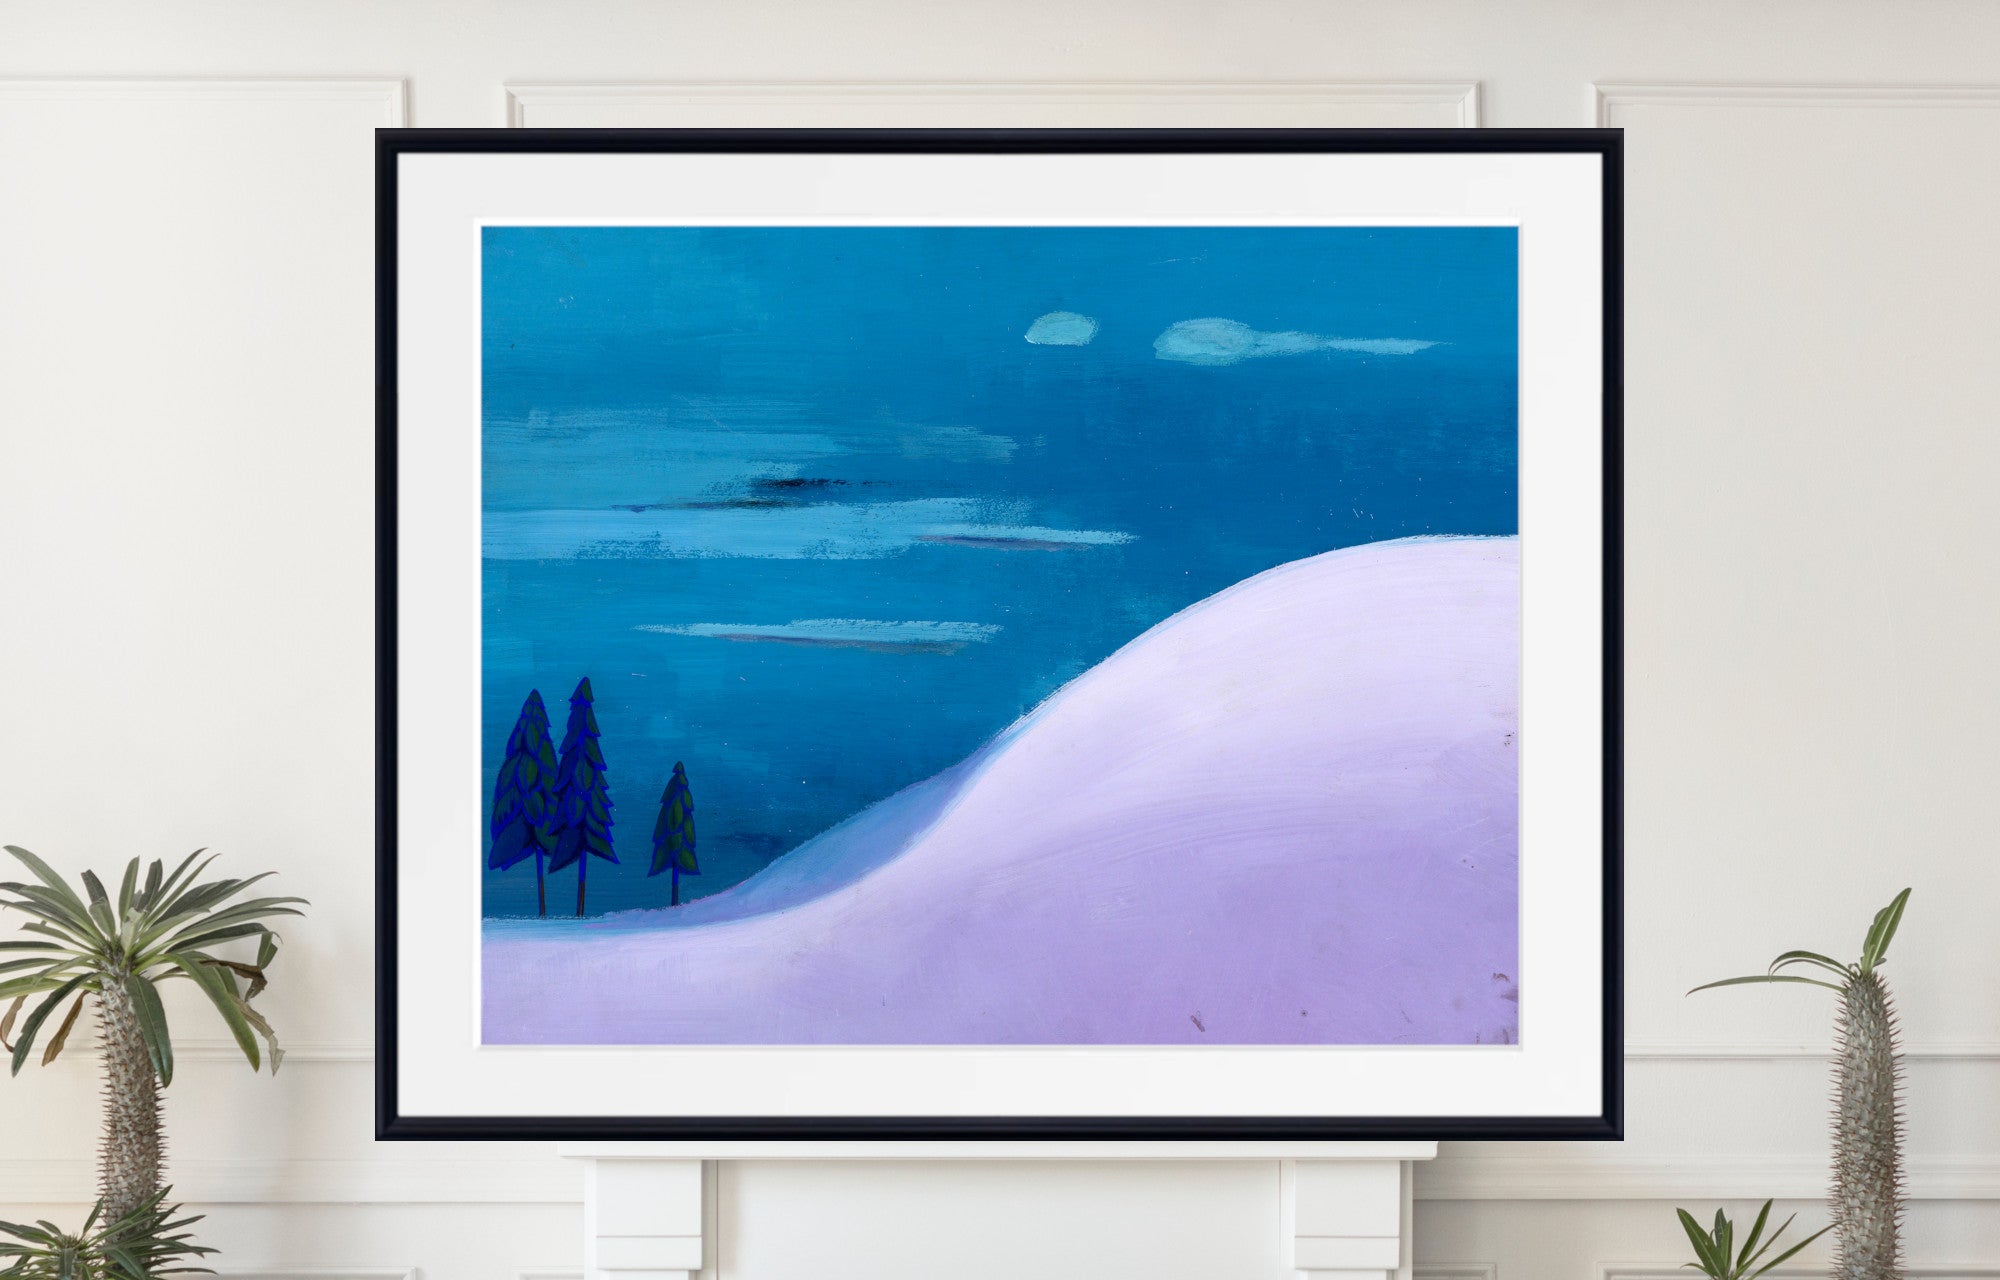 Landschaft in Blue and Lilac, Karl Wiener Print